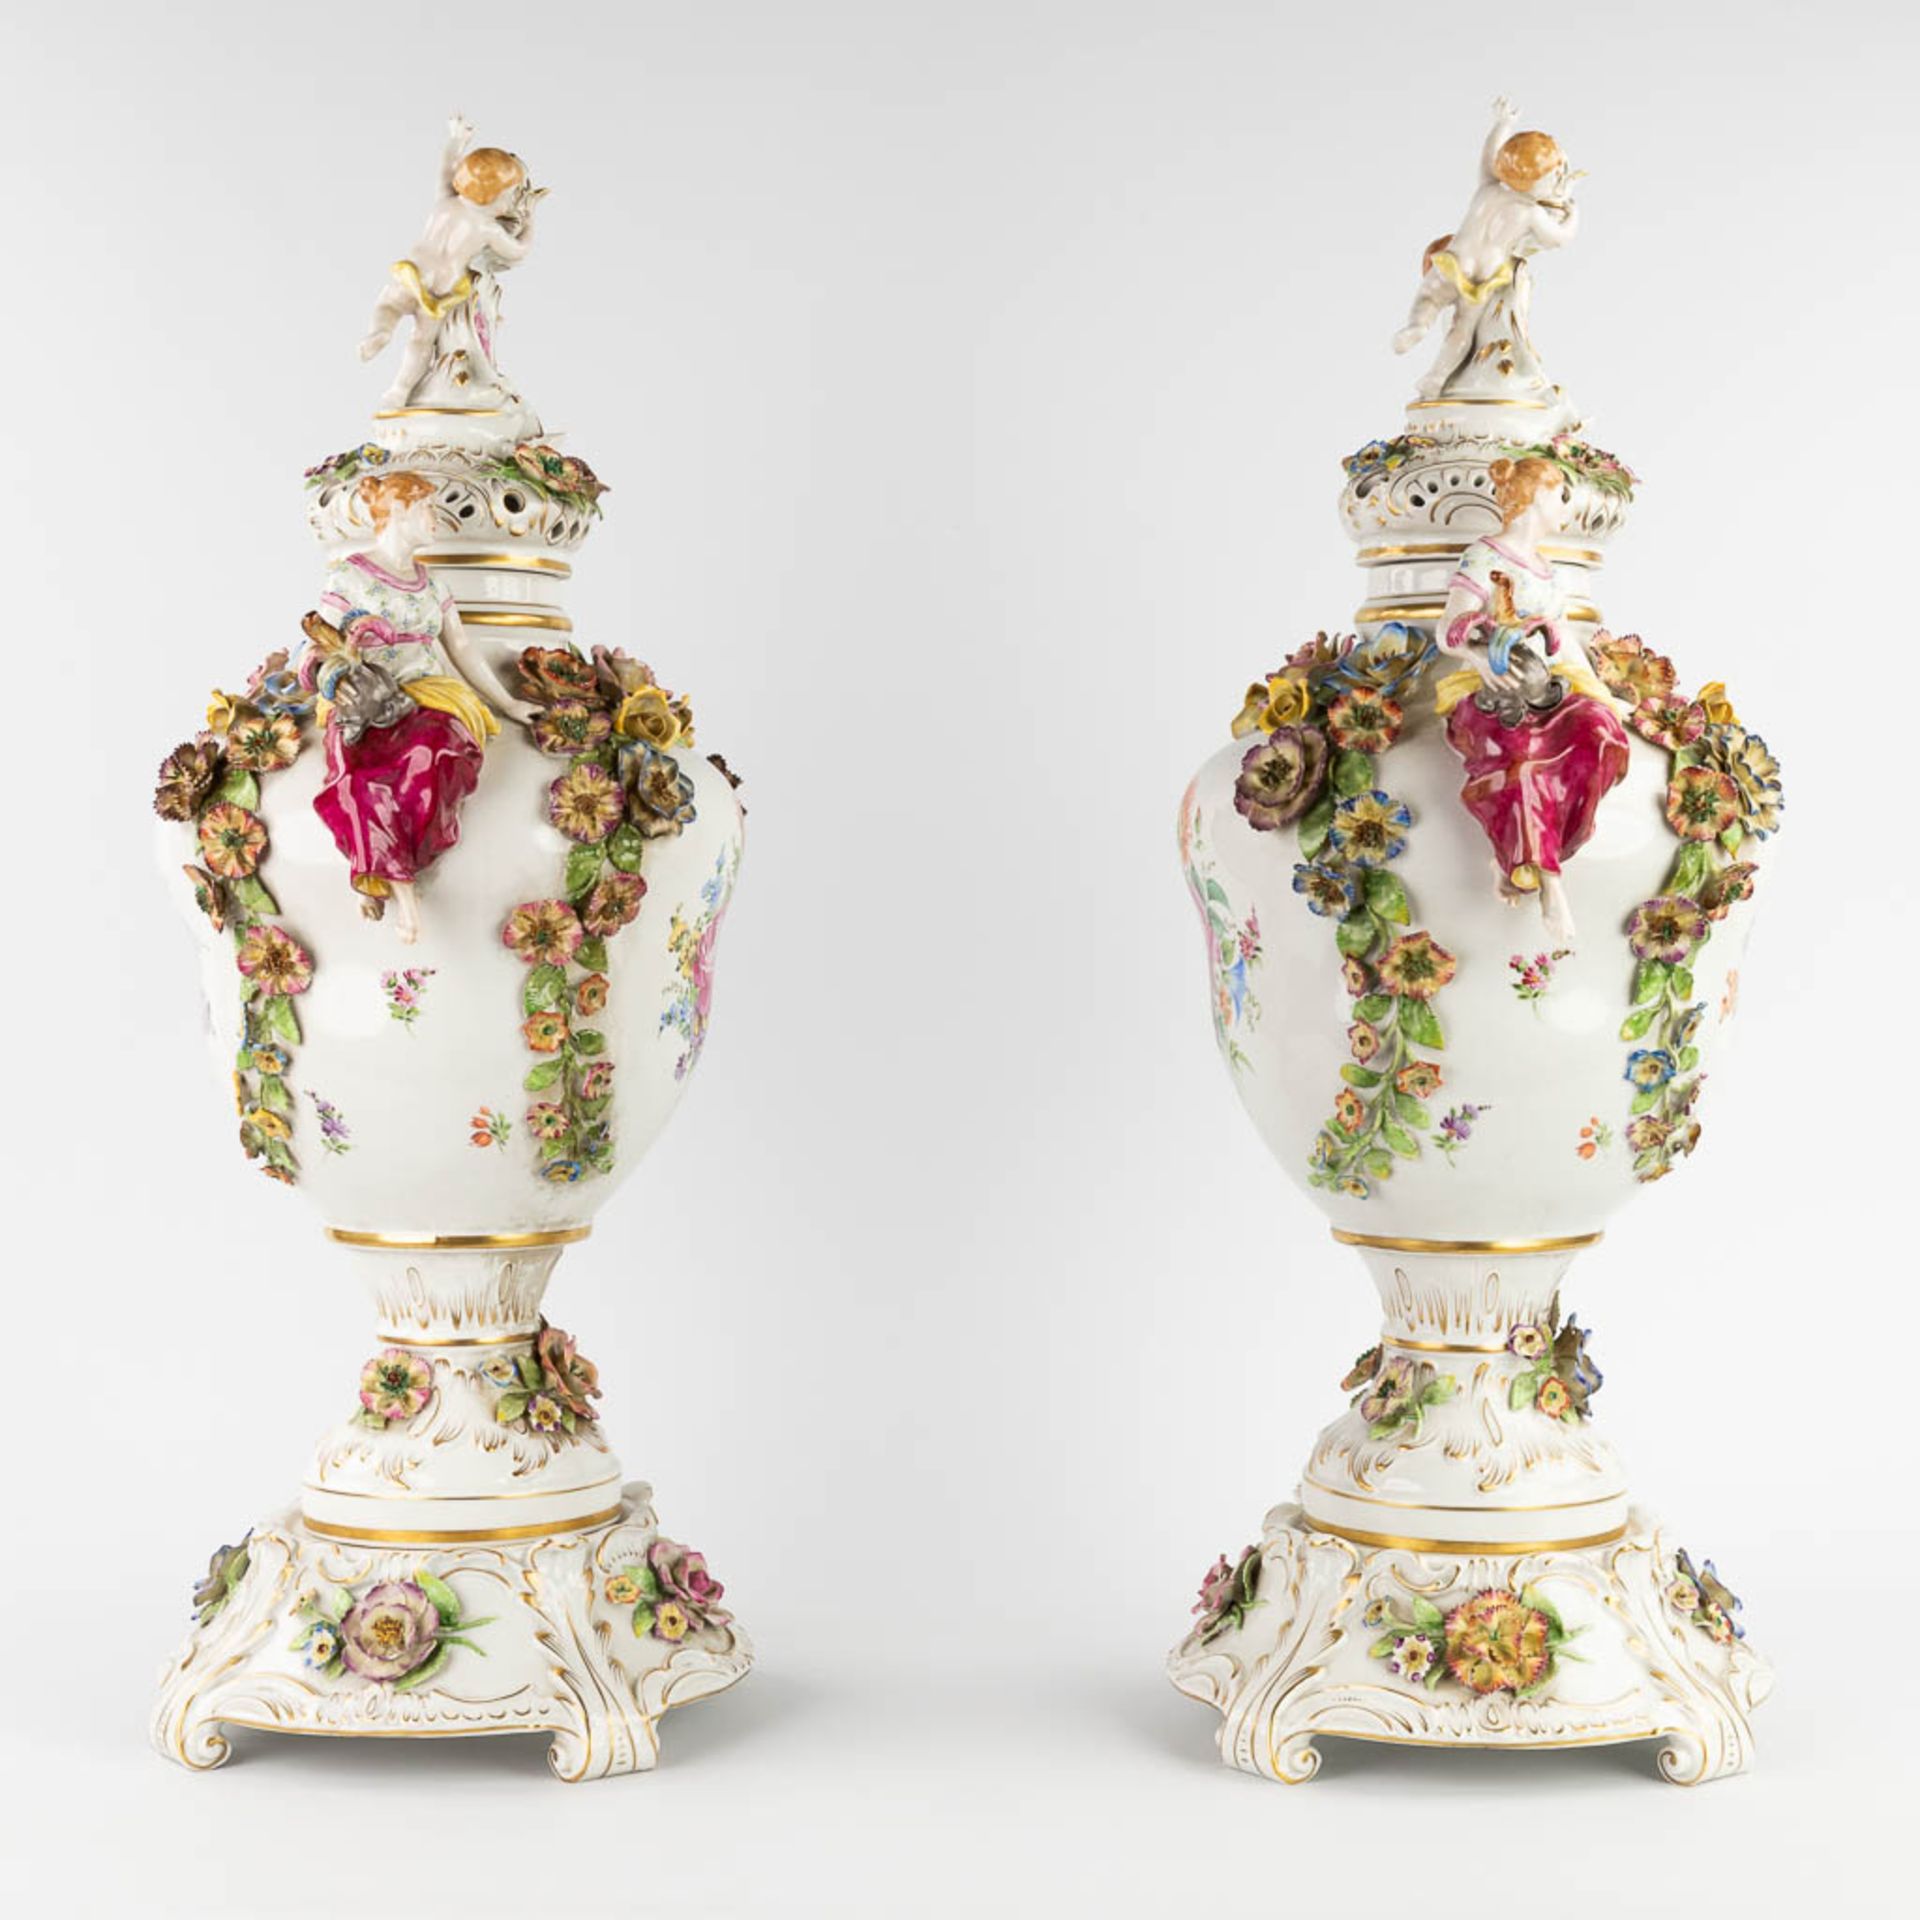 Von Schierholz, Plaue, a pair of large porcelain vases on stands. 20th C. (L:25 x W:35 x H:76 cm) - Image 3 of 19